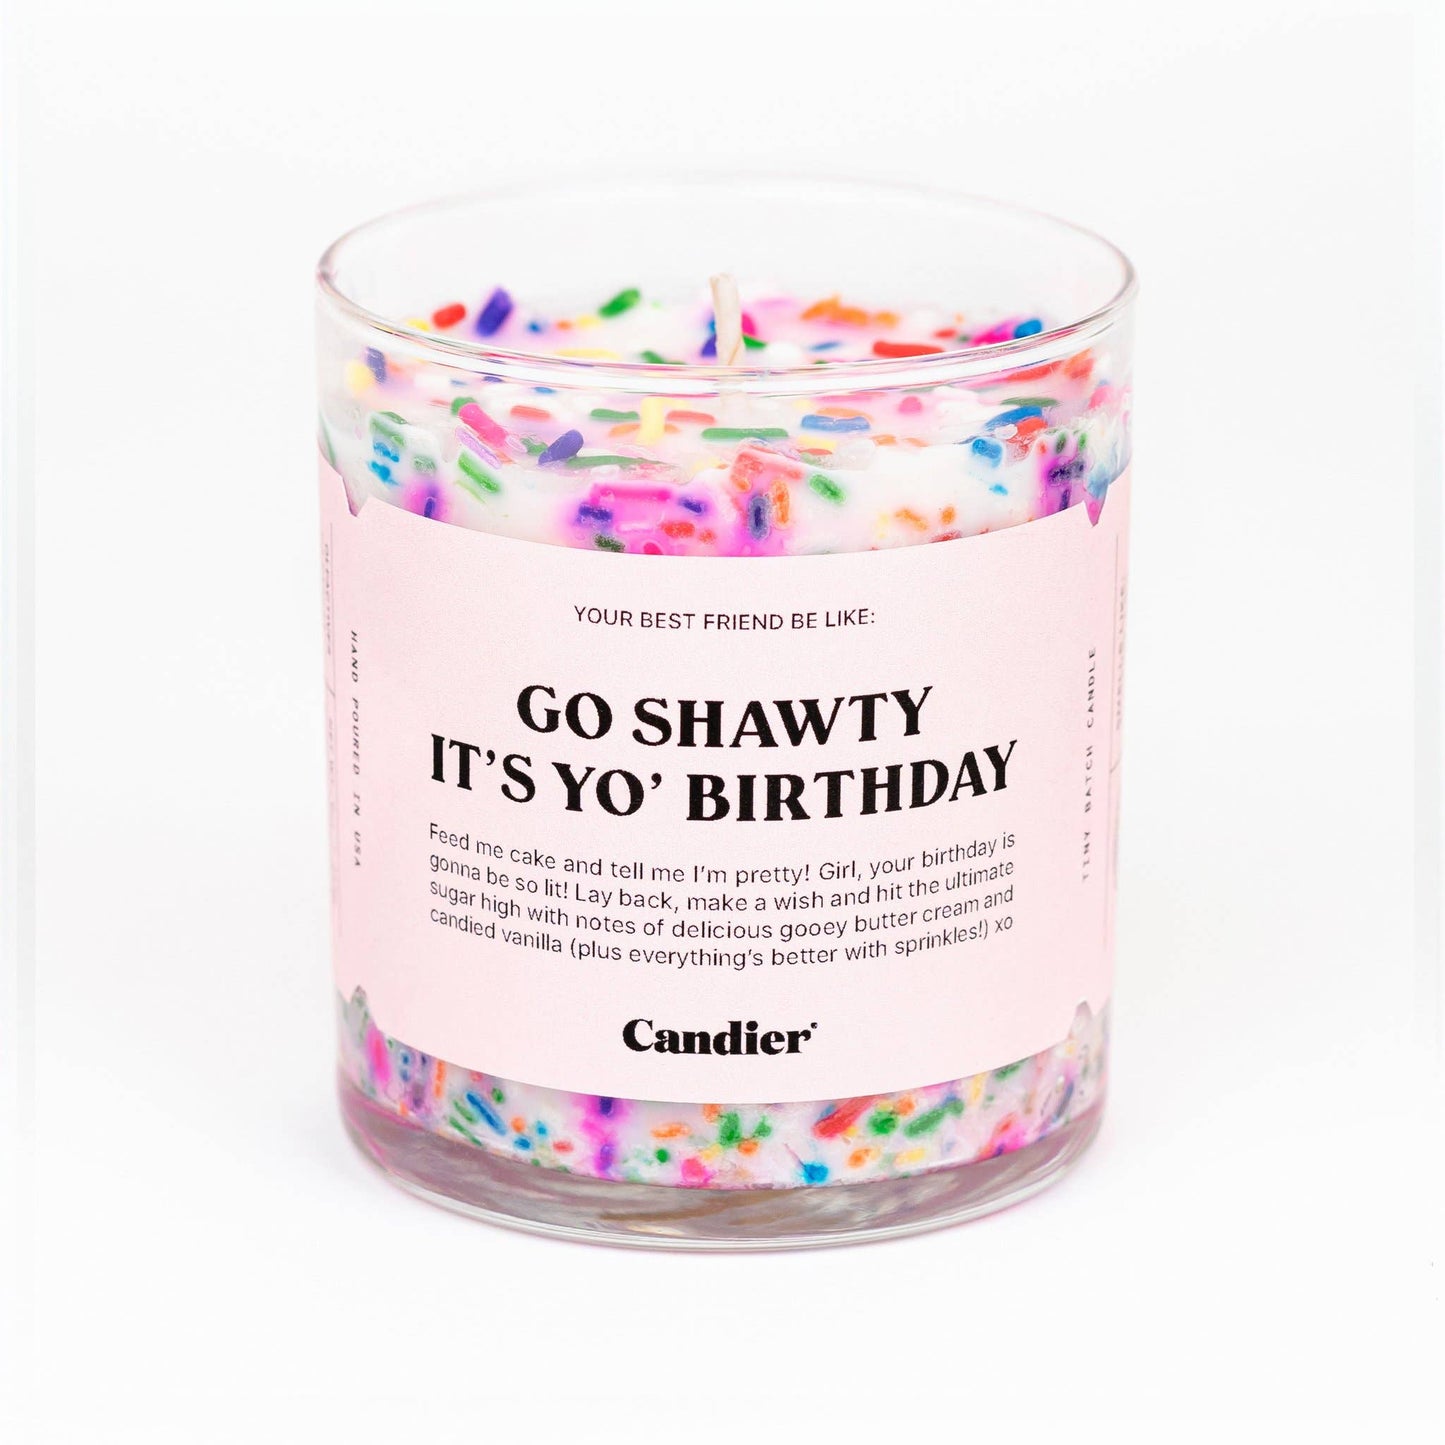 Go Shawty It's Yo Birthday Candier 9oz Soy Candle